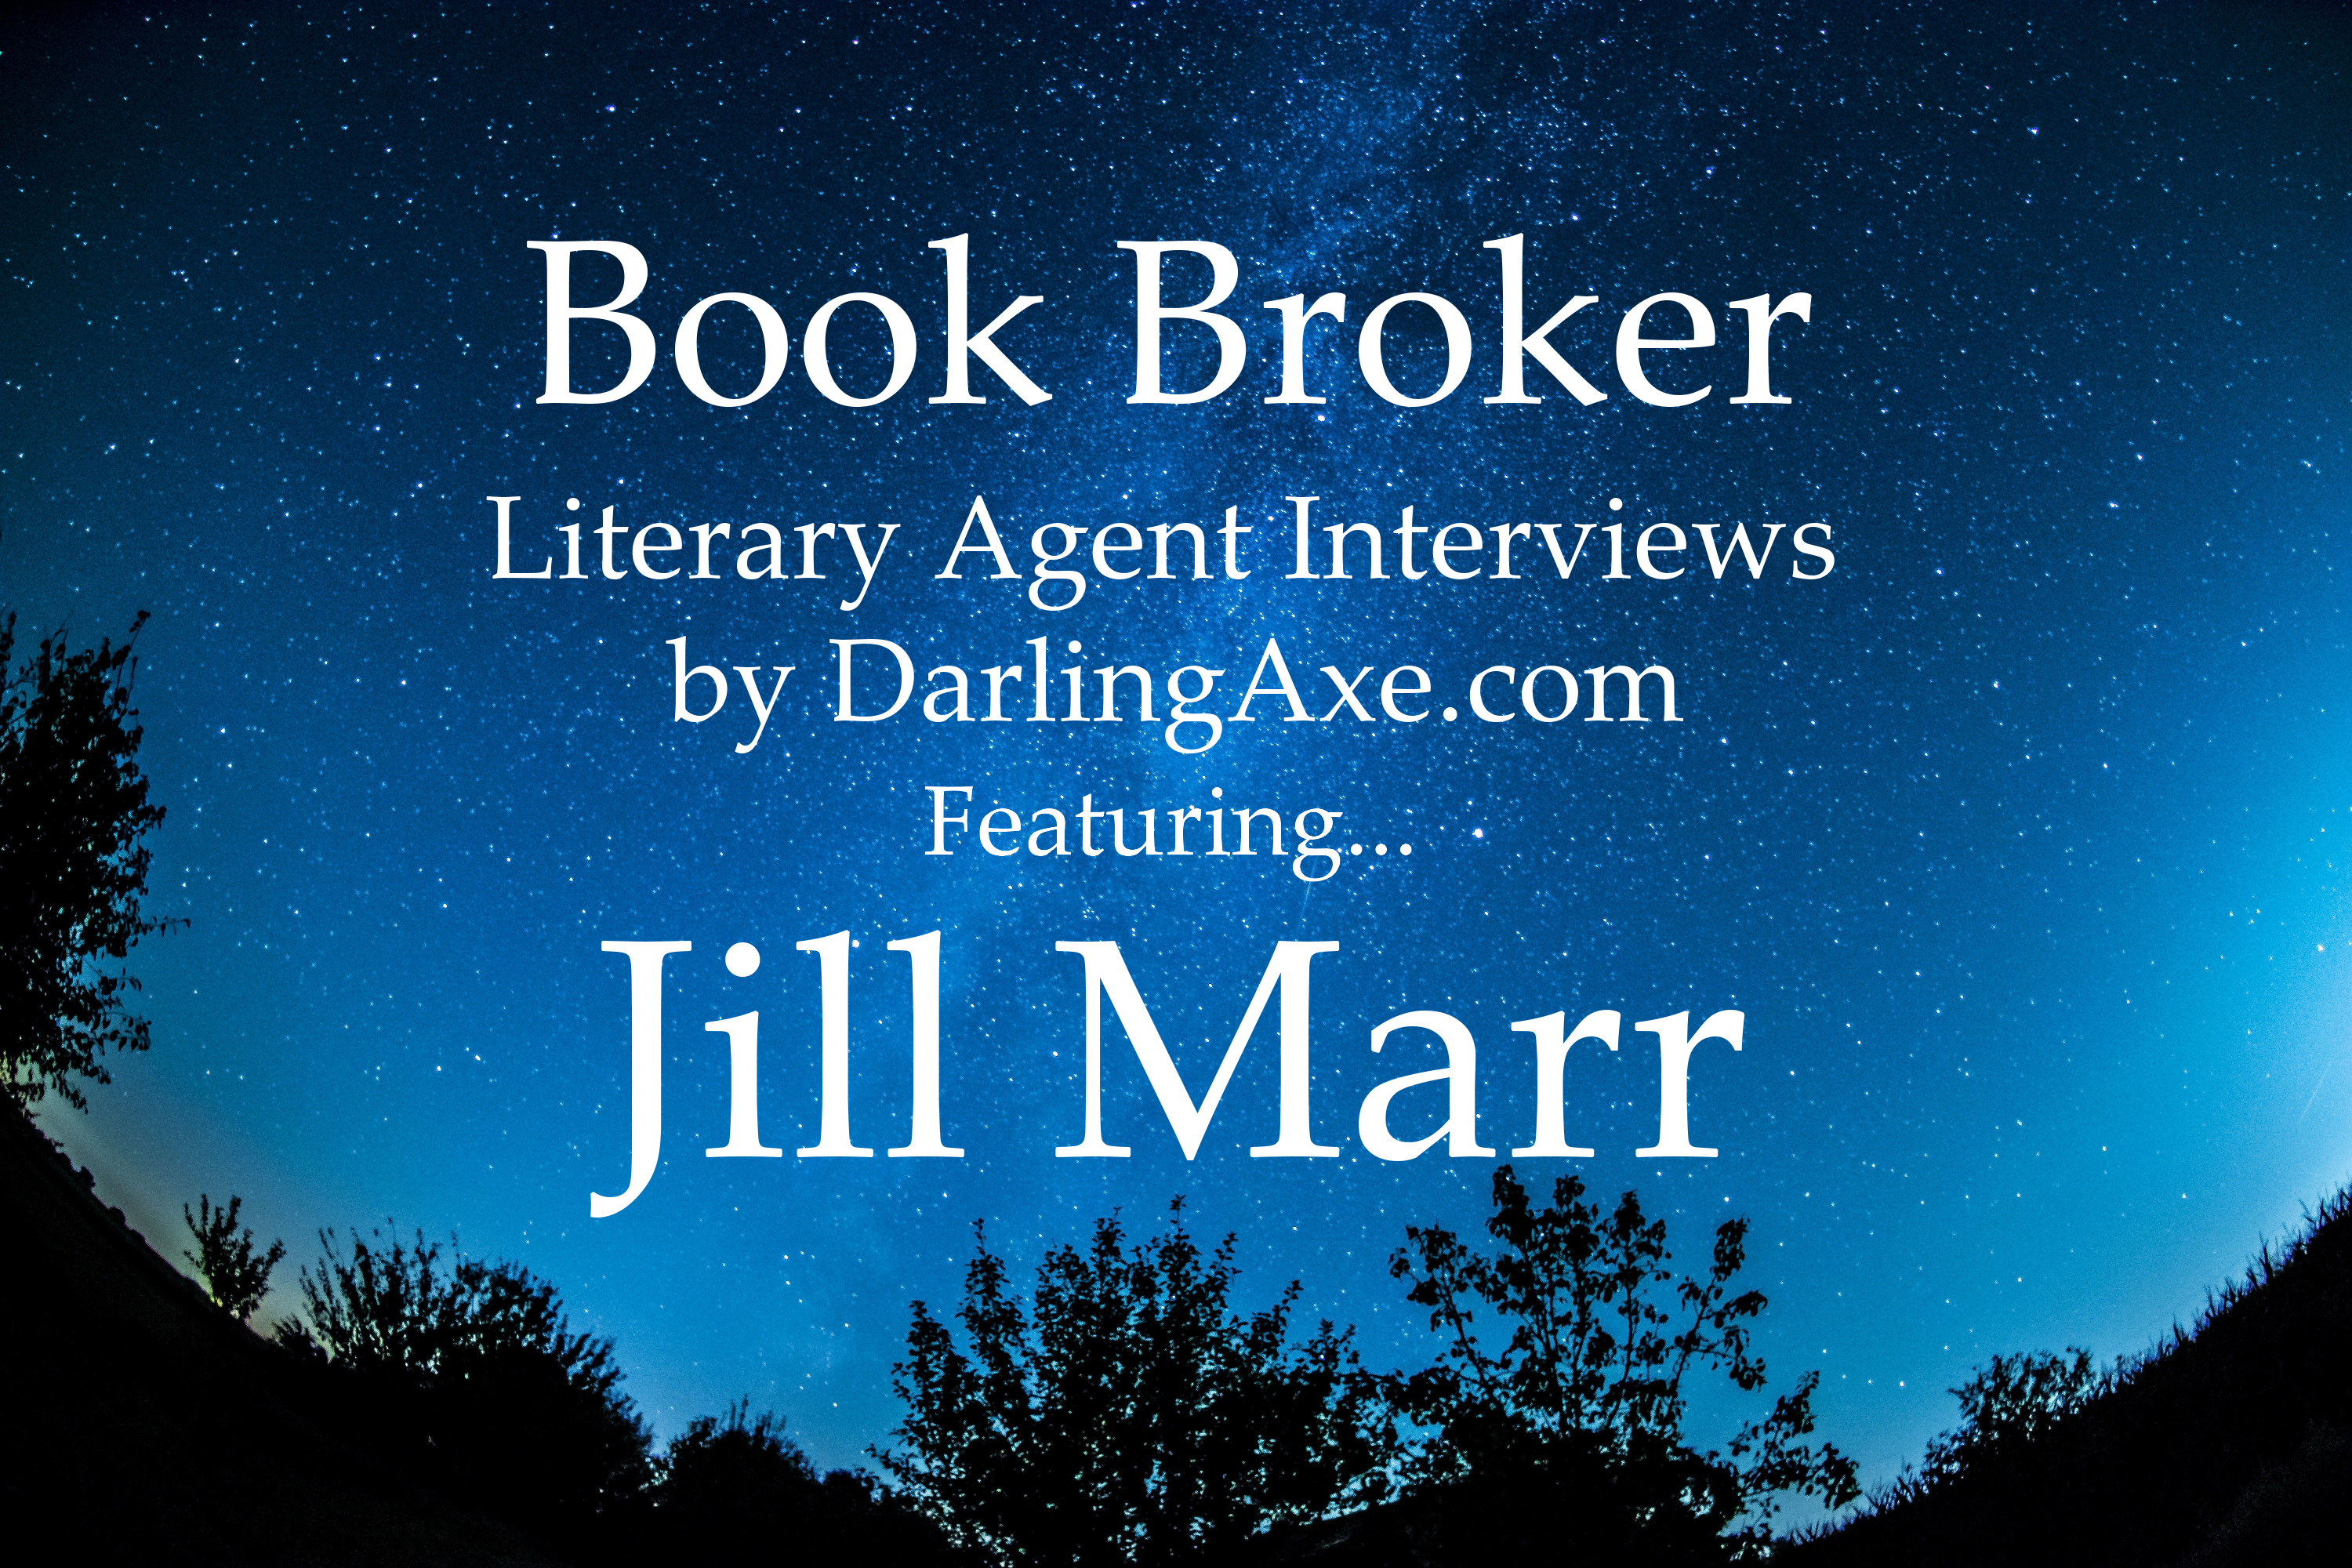 Book Broker—an interview with Jill Marr